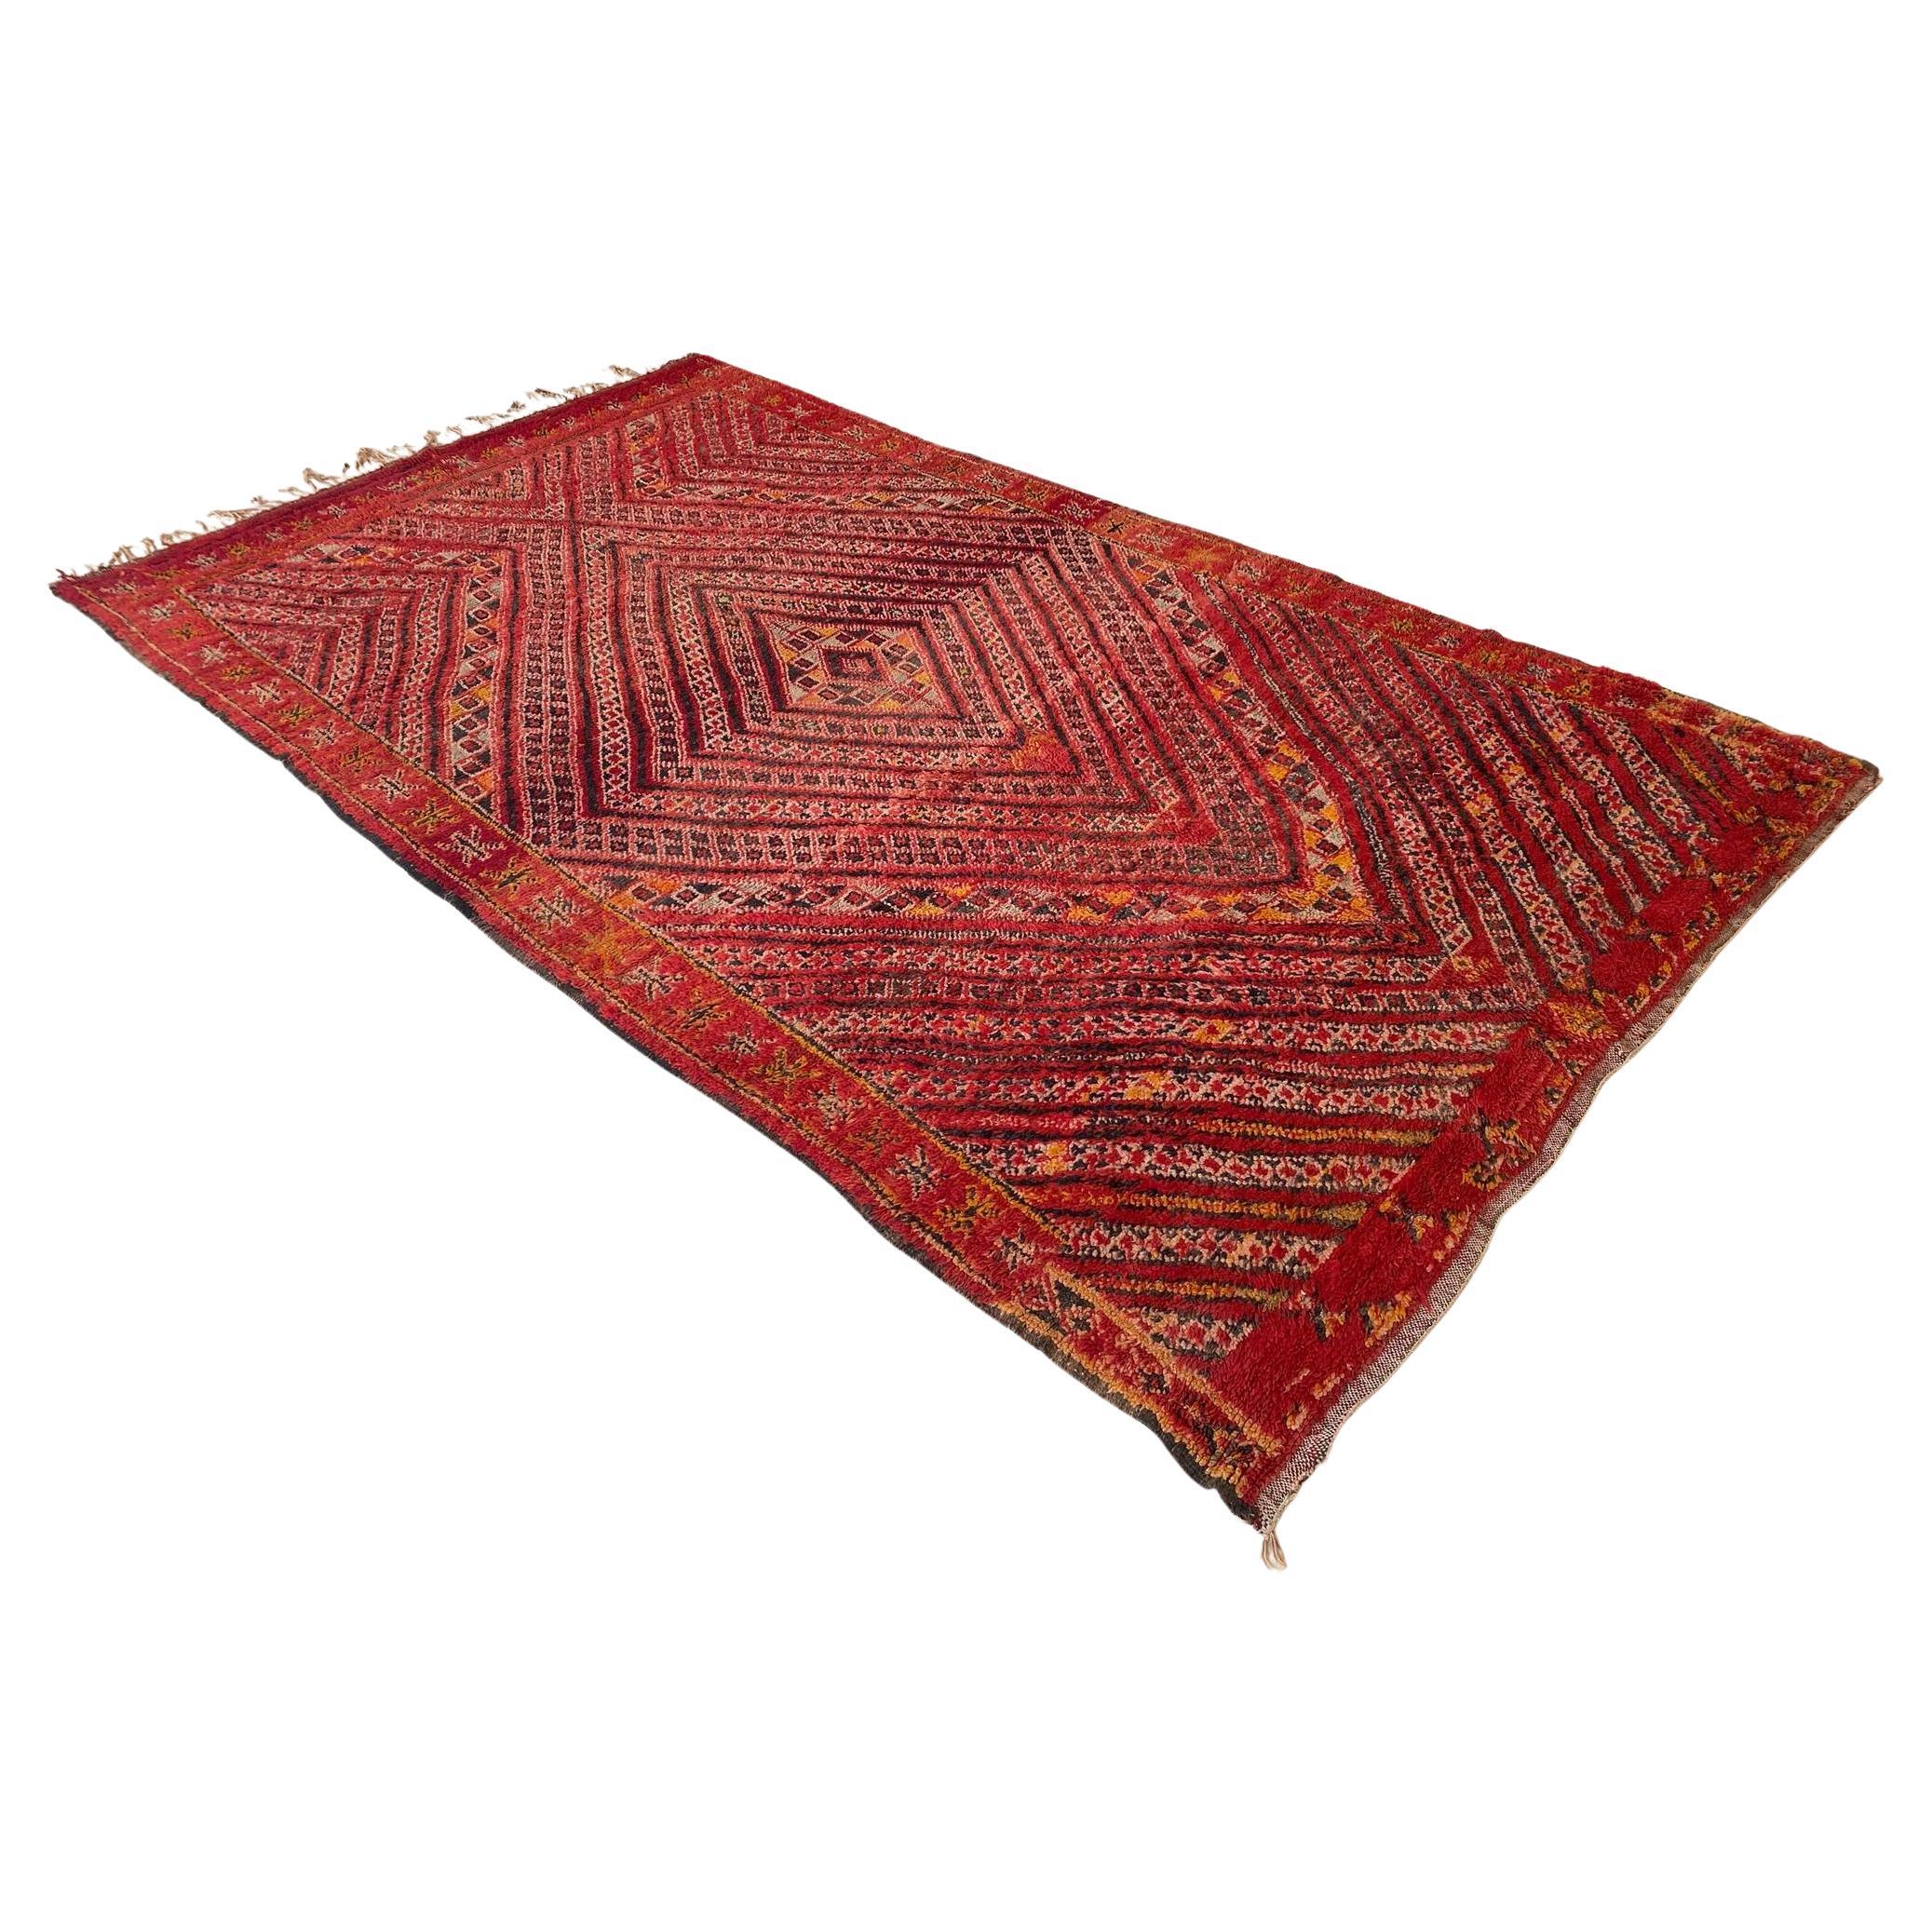 Vintage marokkanischen Zayane Teppich - Rot - 6.7x11.3feet / 205x344cm